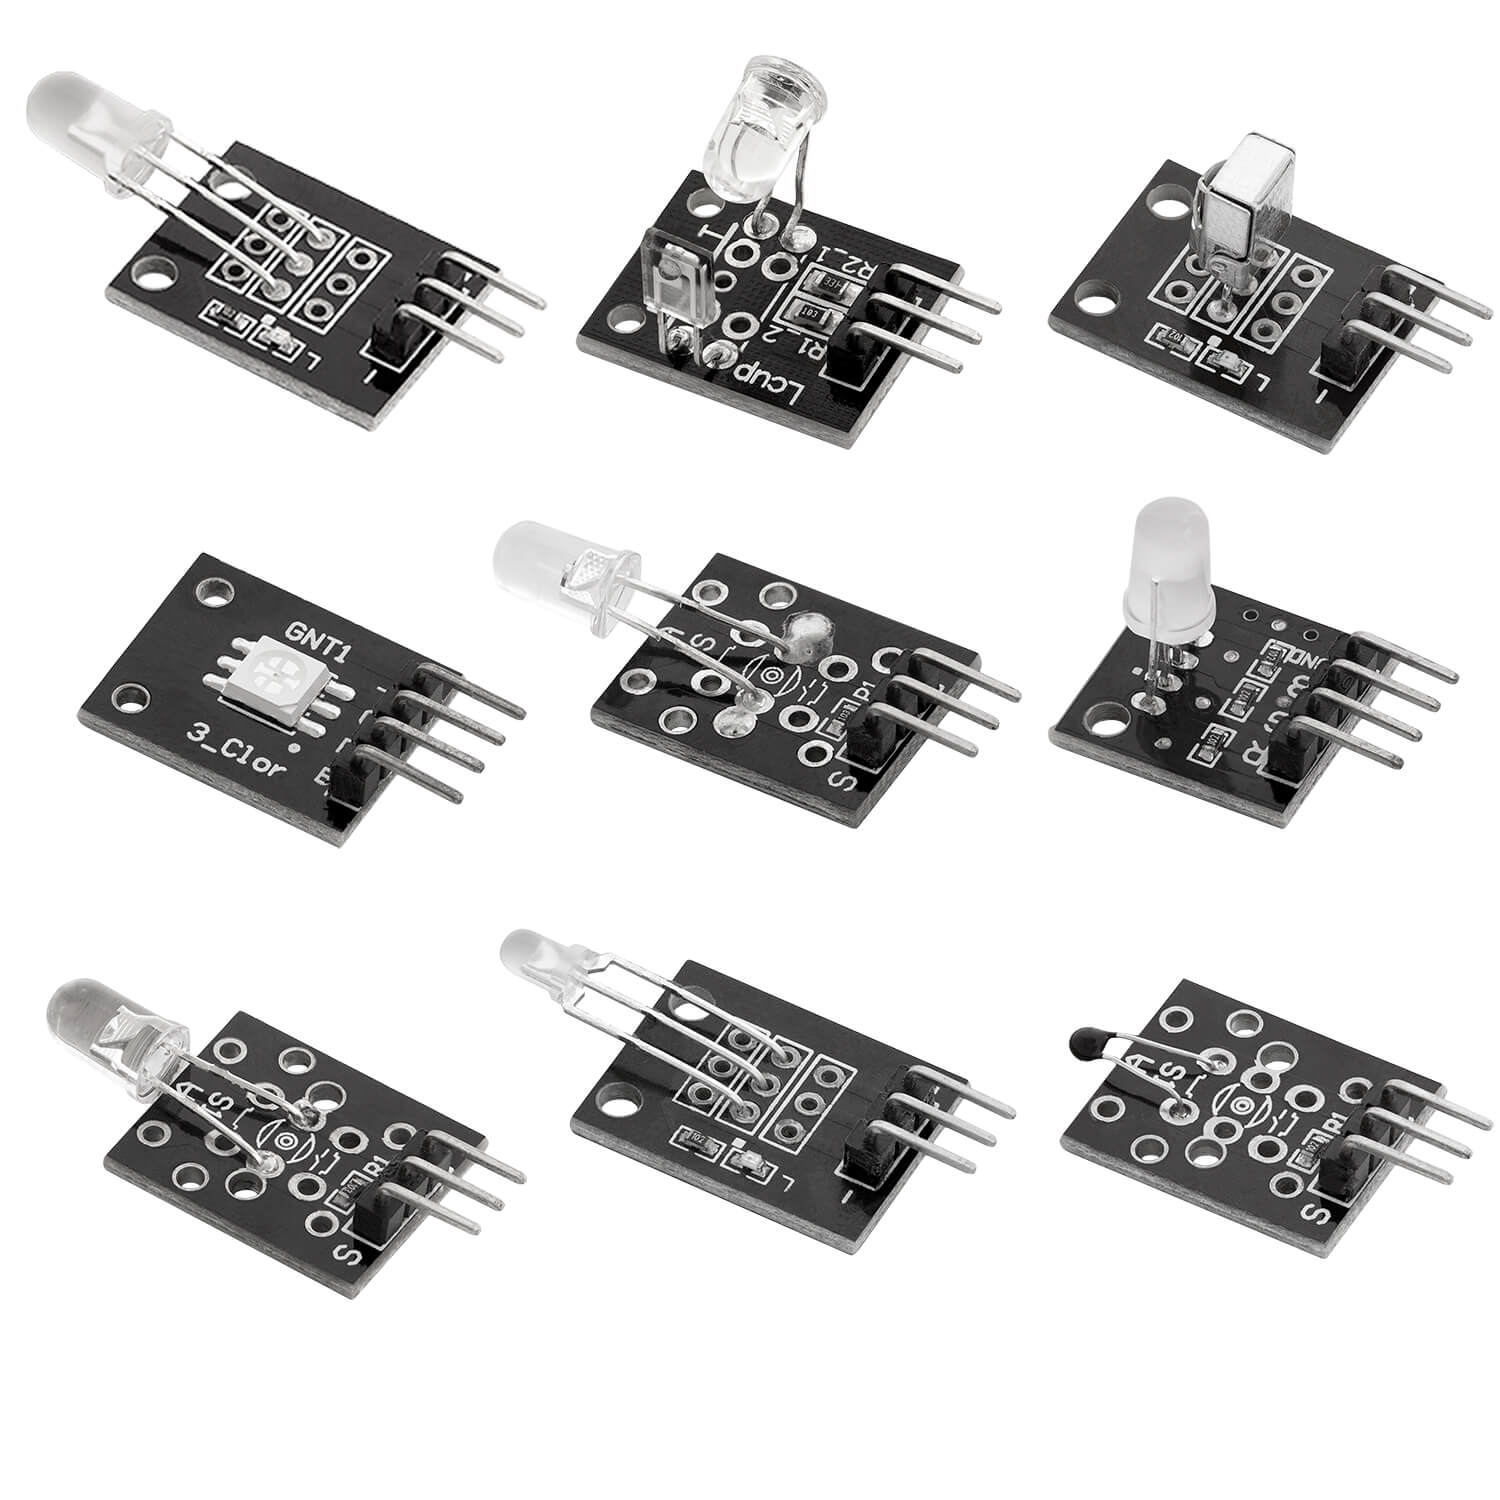 35 in 1 Sensorenkit Modulkit und Zubehörkit kompatibel mit Arduino und Raspberry Pi